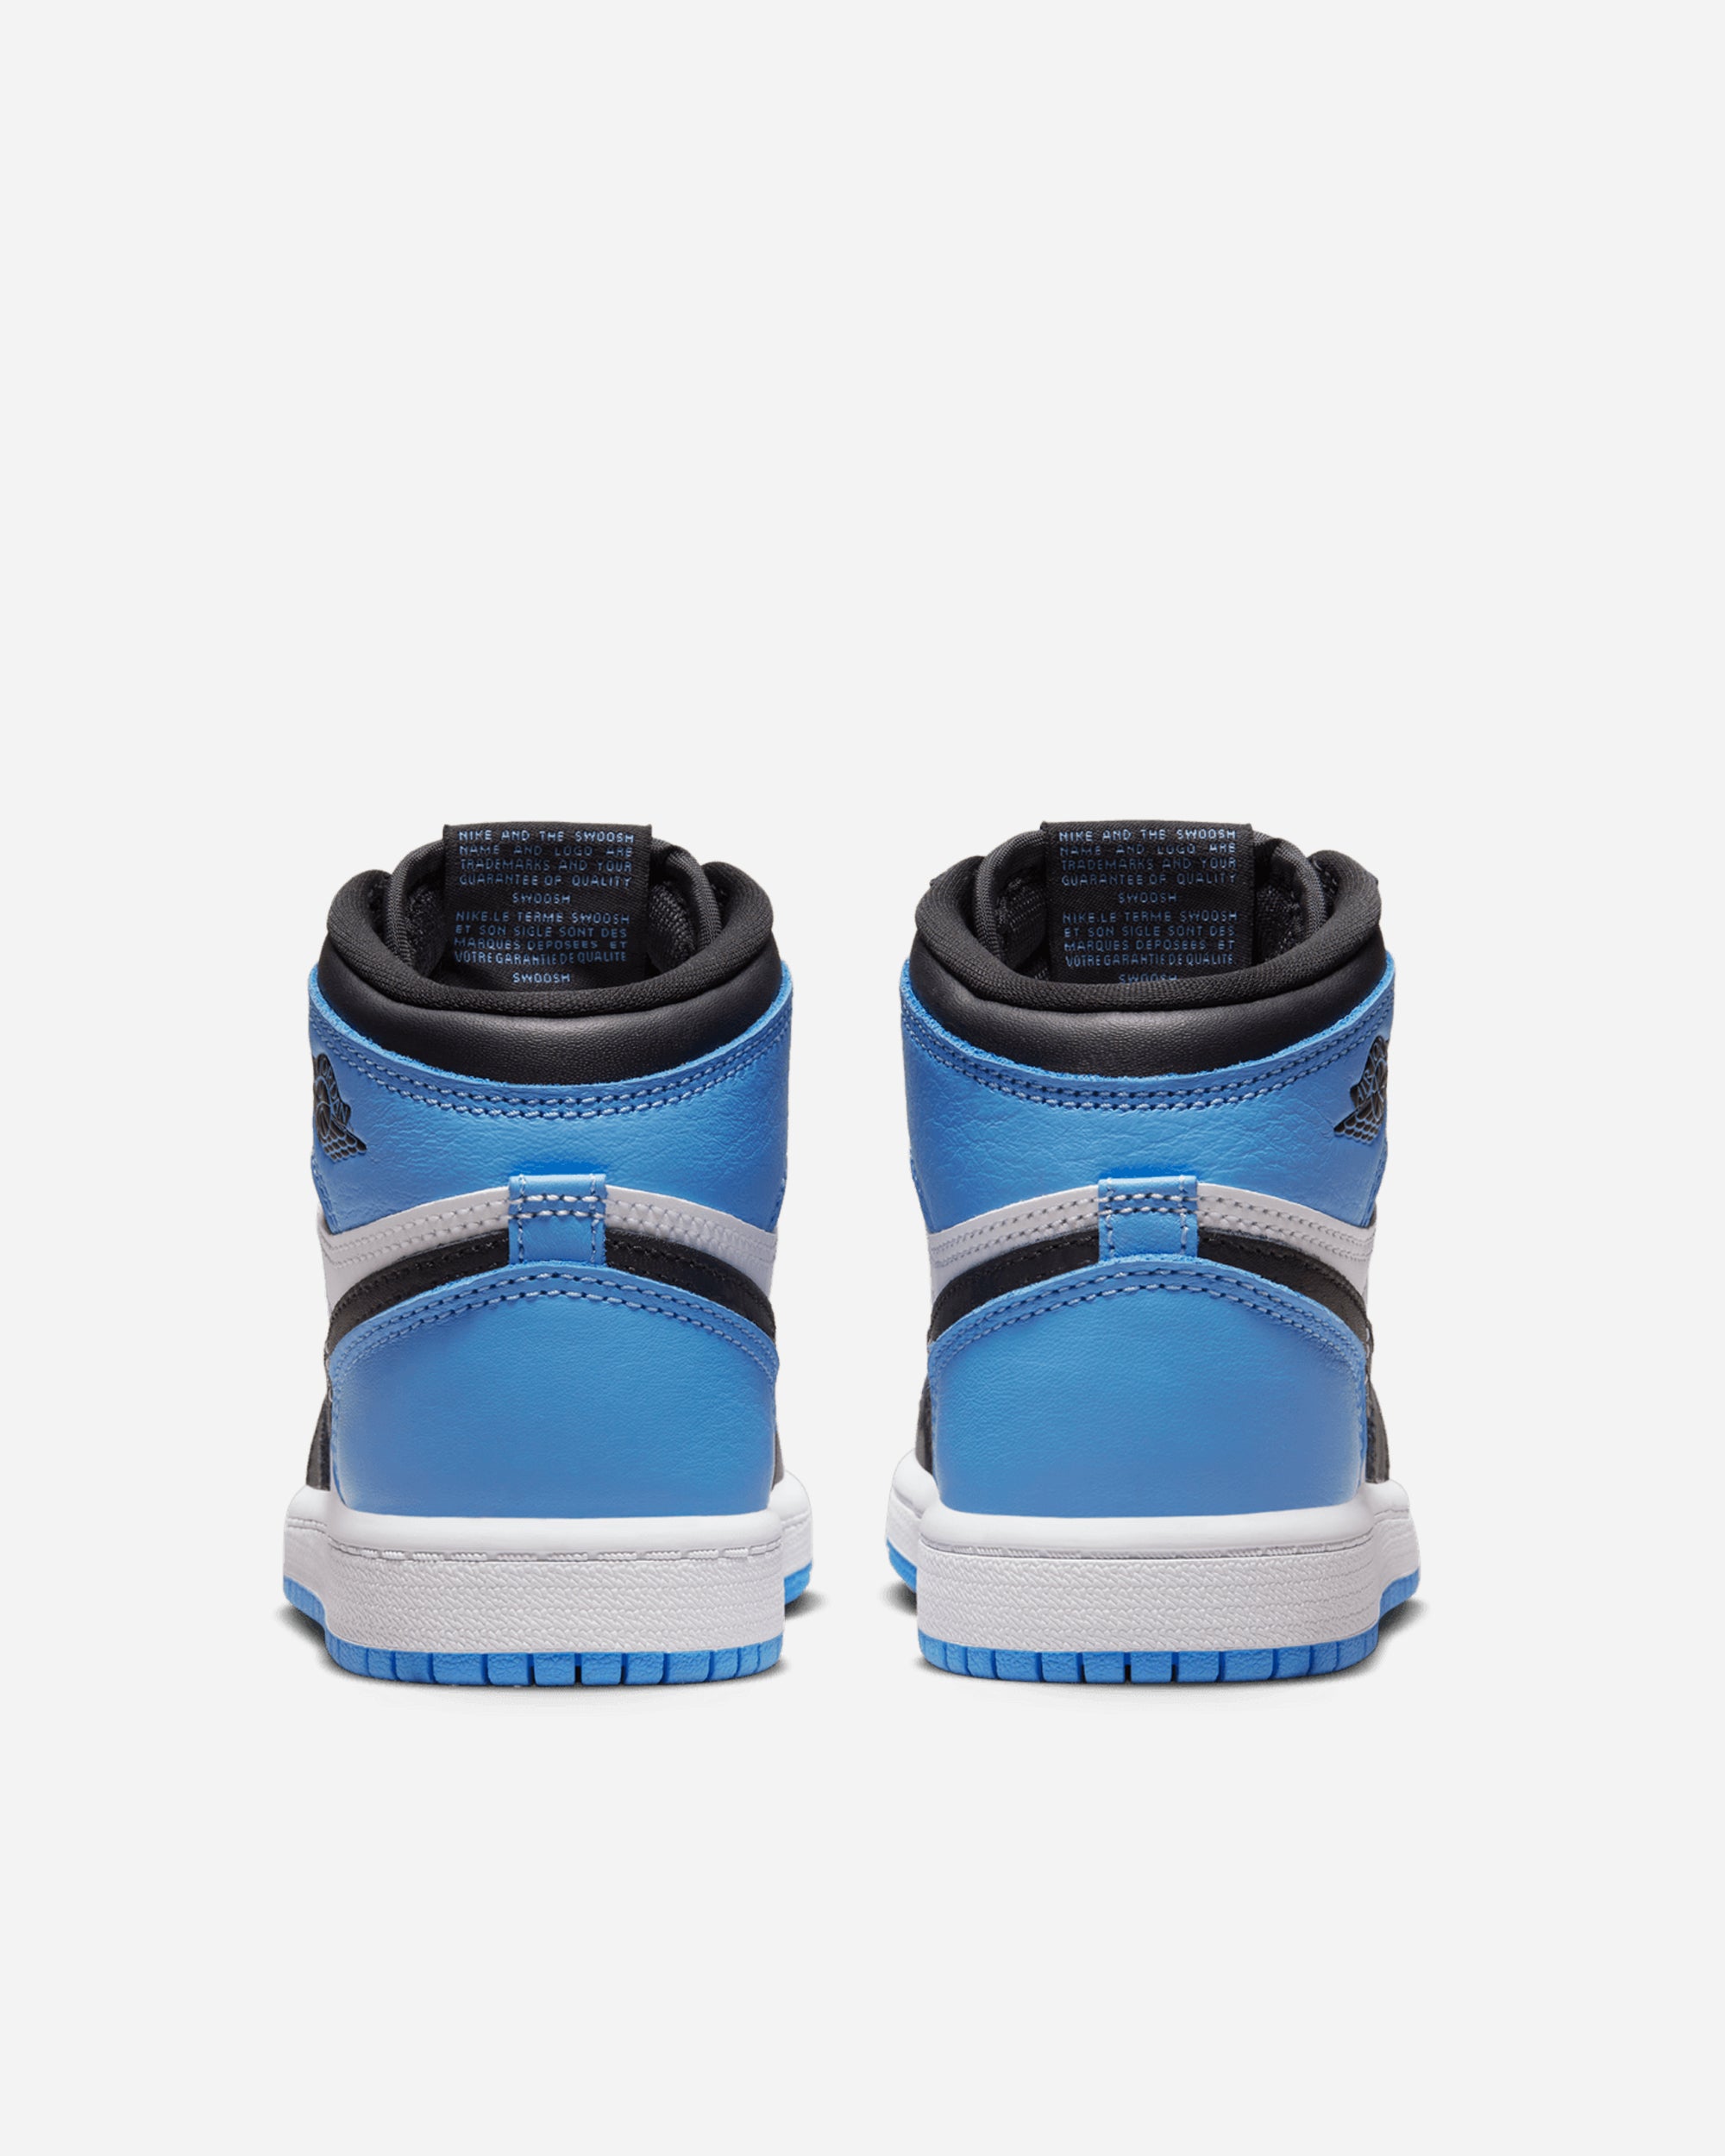 Jordan Brand Jordan 1 Retro High OG 'University Blue' (Preschool) UNIVERSITY BLUE/BLACK-WHITE FD1412-400